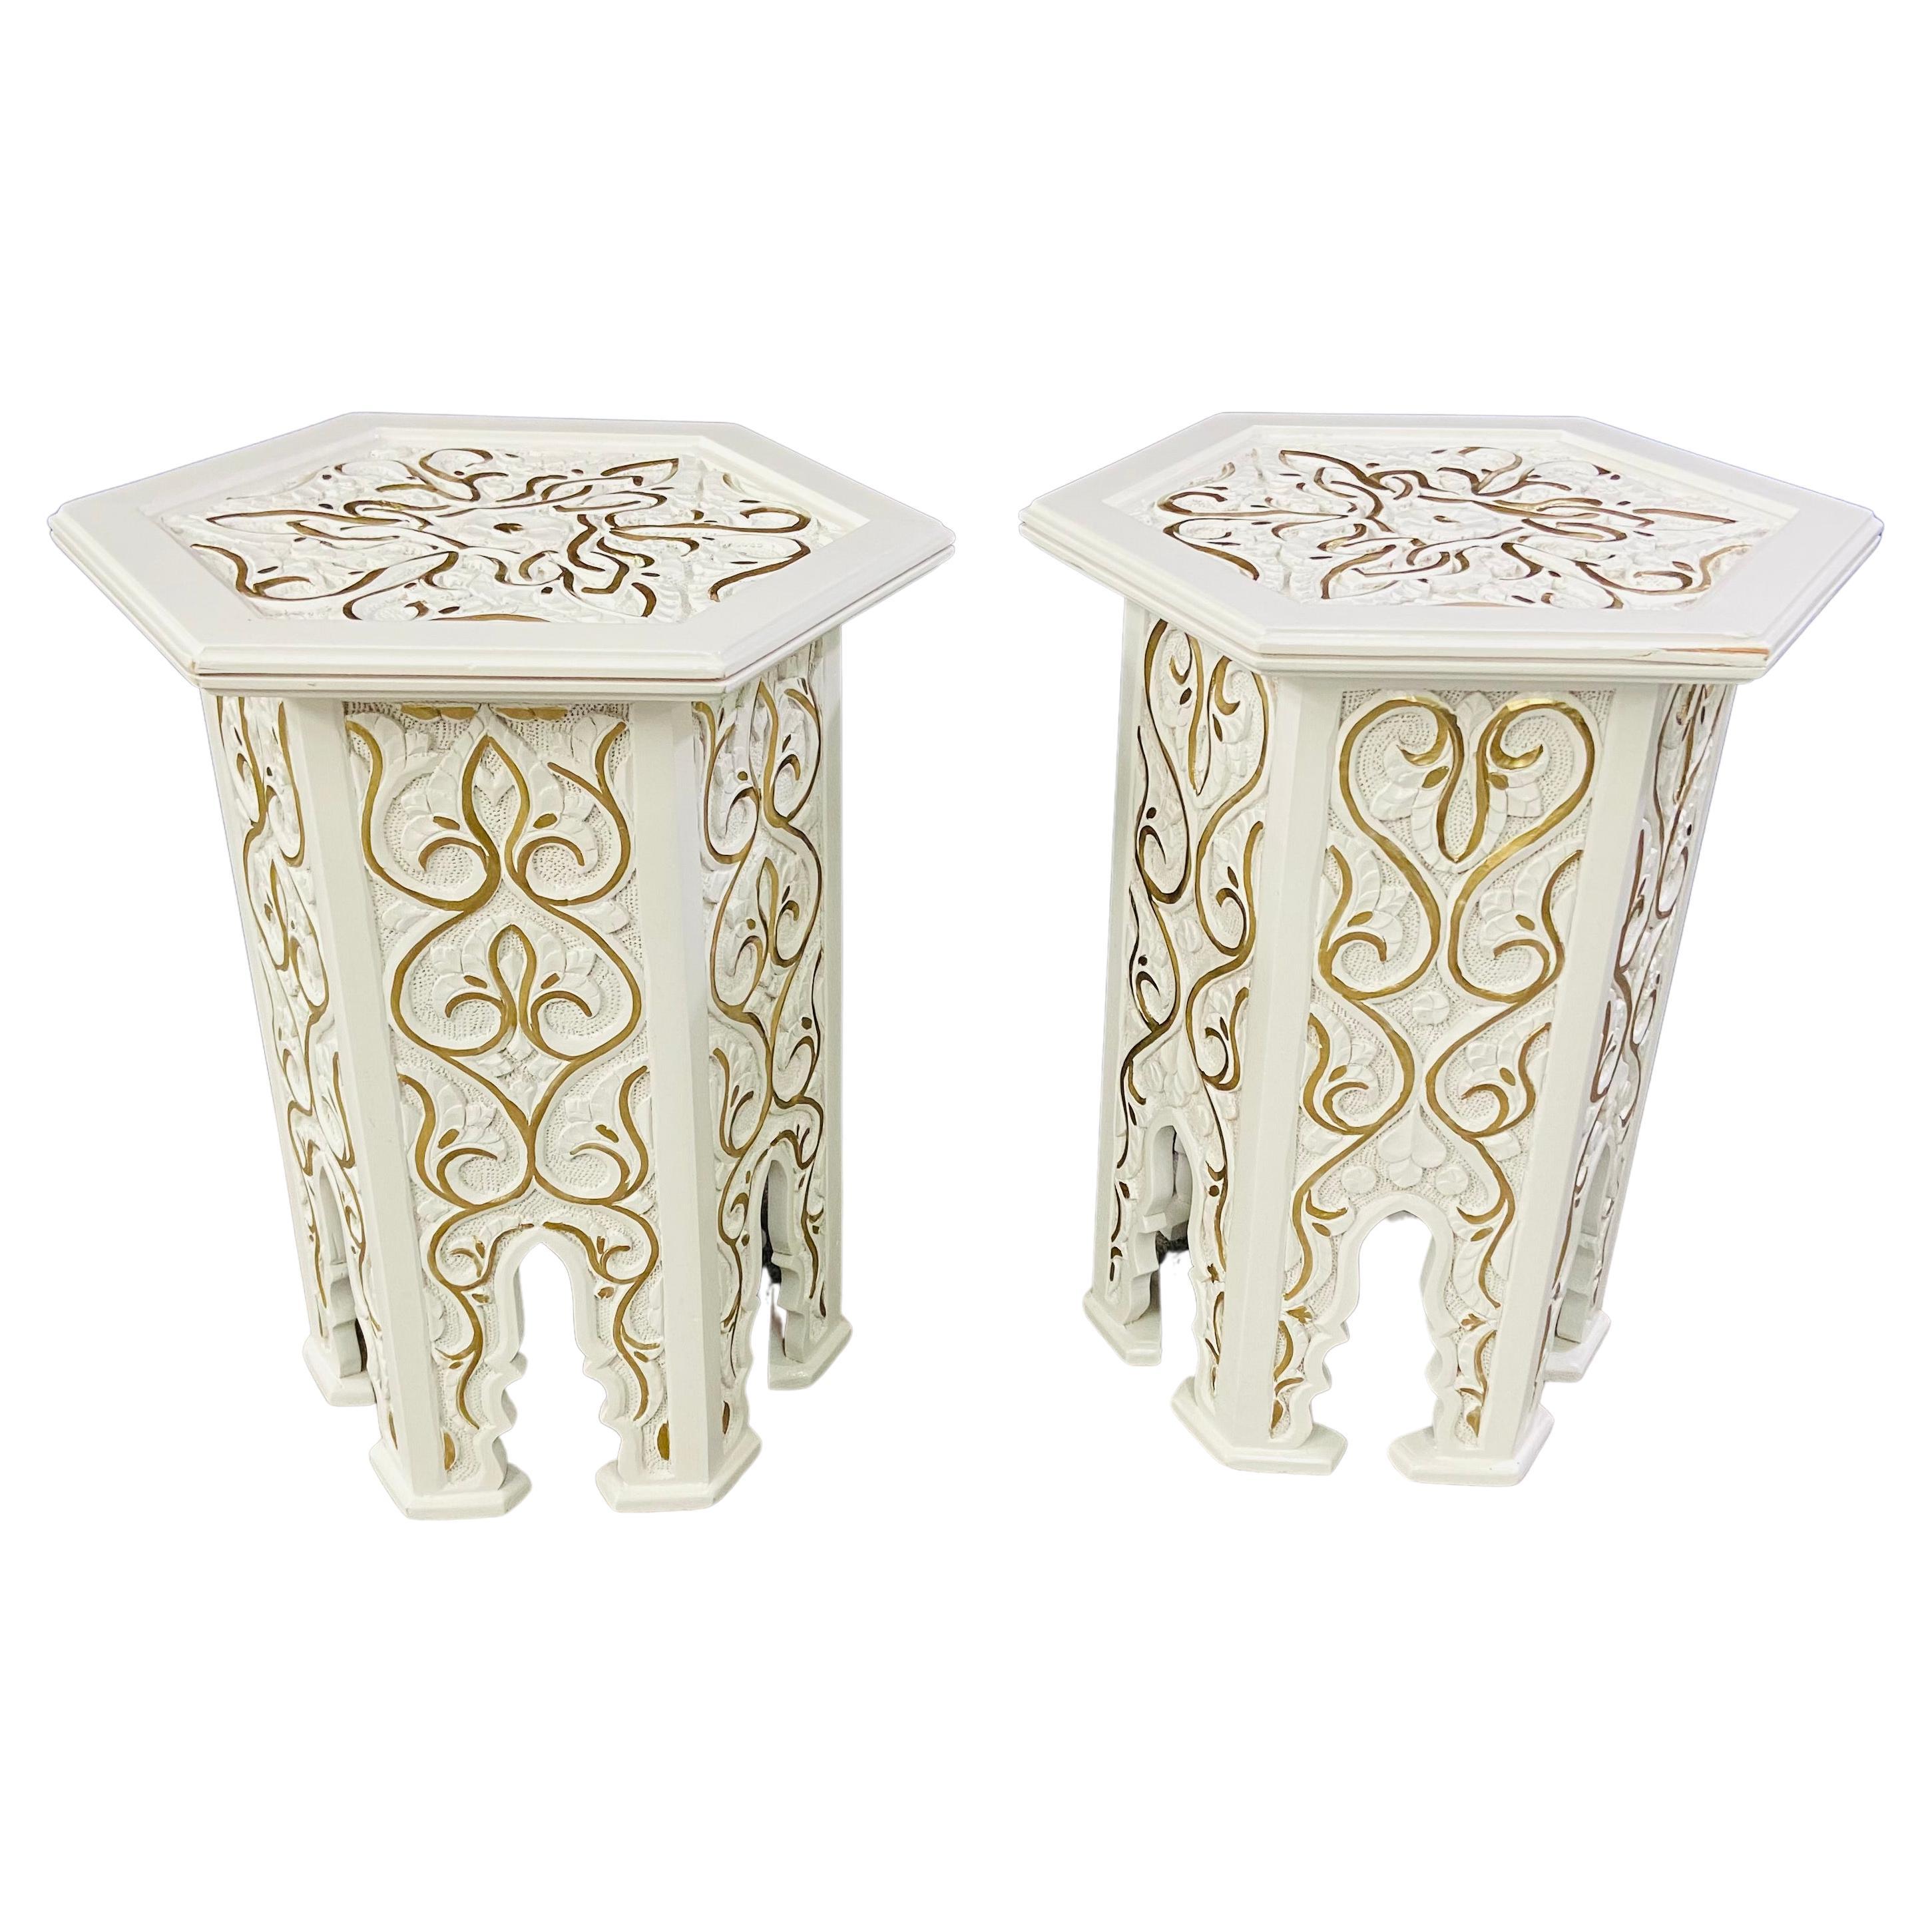 Paire de tables d'appoint ou de tables d'extrémité marocaines Stye blanches avec motif en or Hollywood Regency